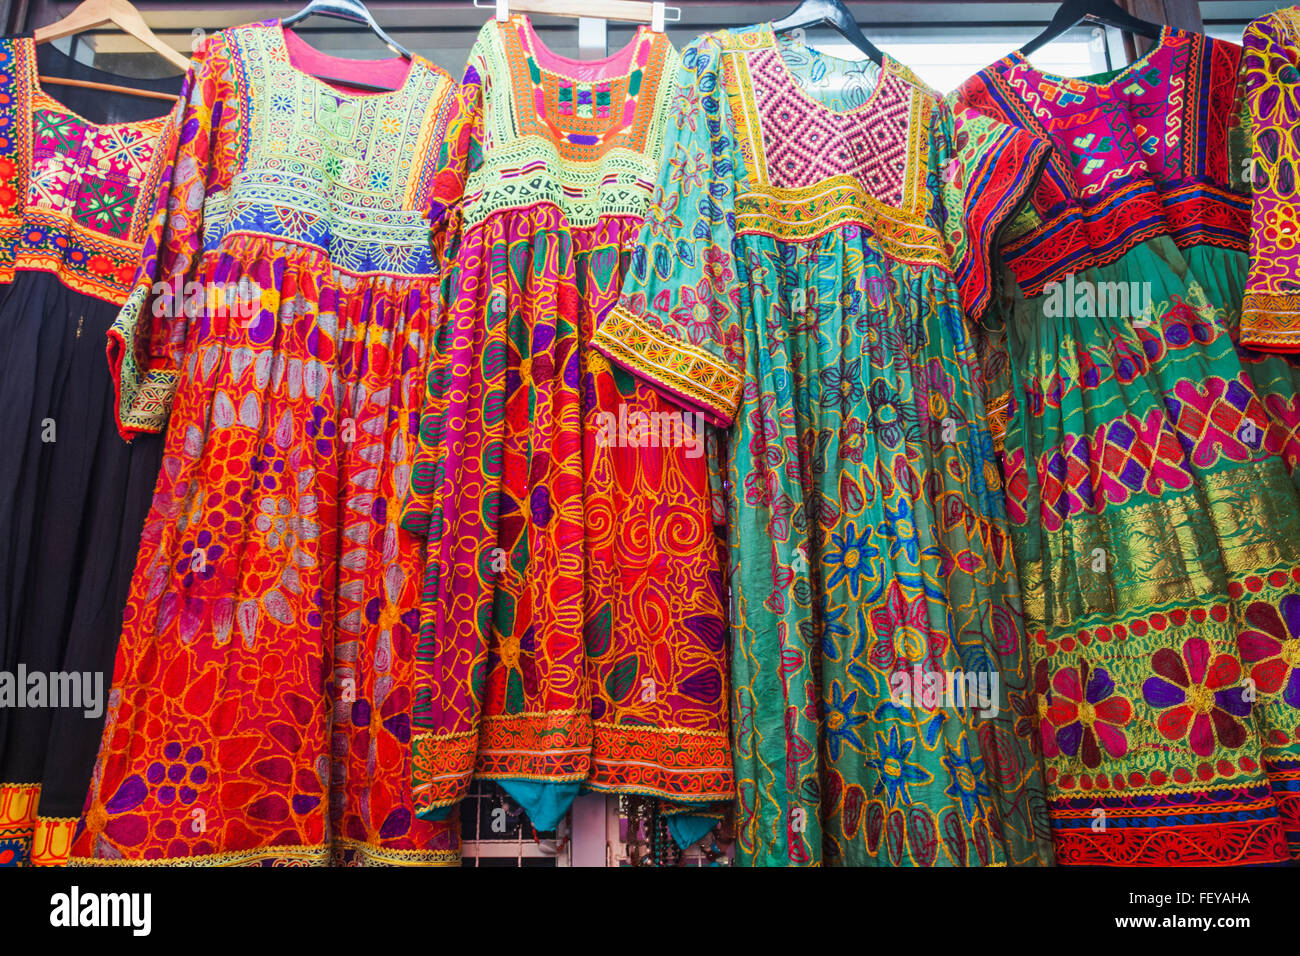 Thailand, Bangkok, Chatuchak-Markt, Anzeige der ethnischen Kleider Shop  Stockfotografie - Alamy